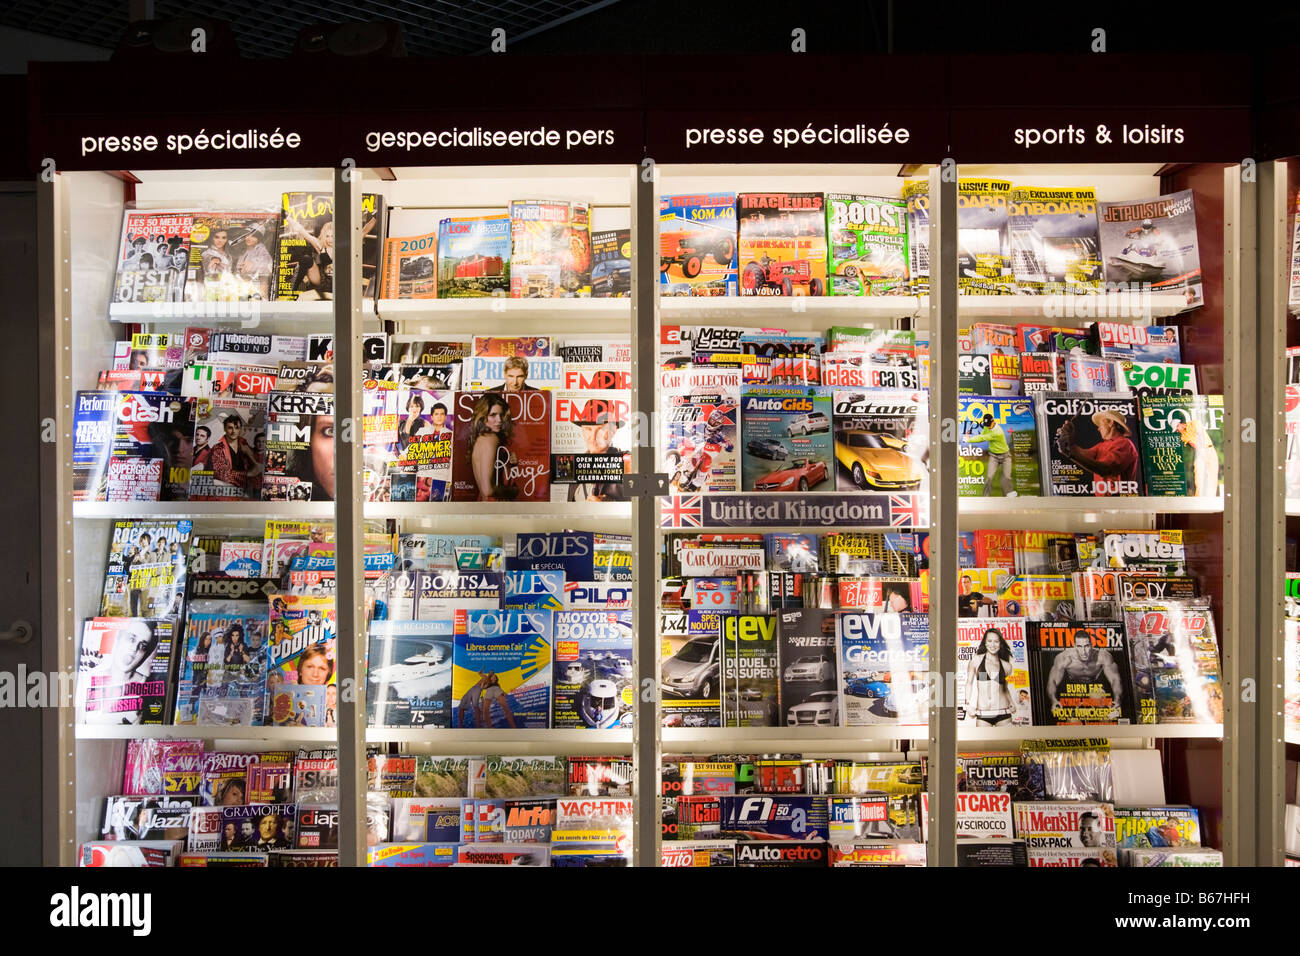 Les magazines d'intérêt général pour la vente au niveau du relais de 'devoir gratuitement' style boutique dans le salon Eurostar de la gare du Midi de Bruxelles, Belgique Banque D'Images